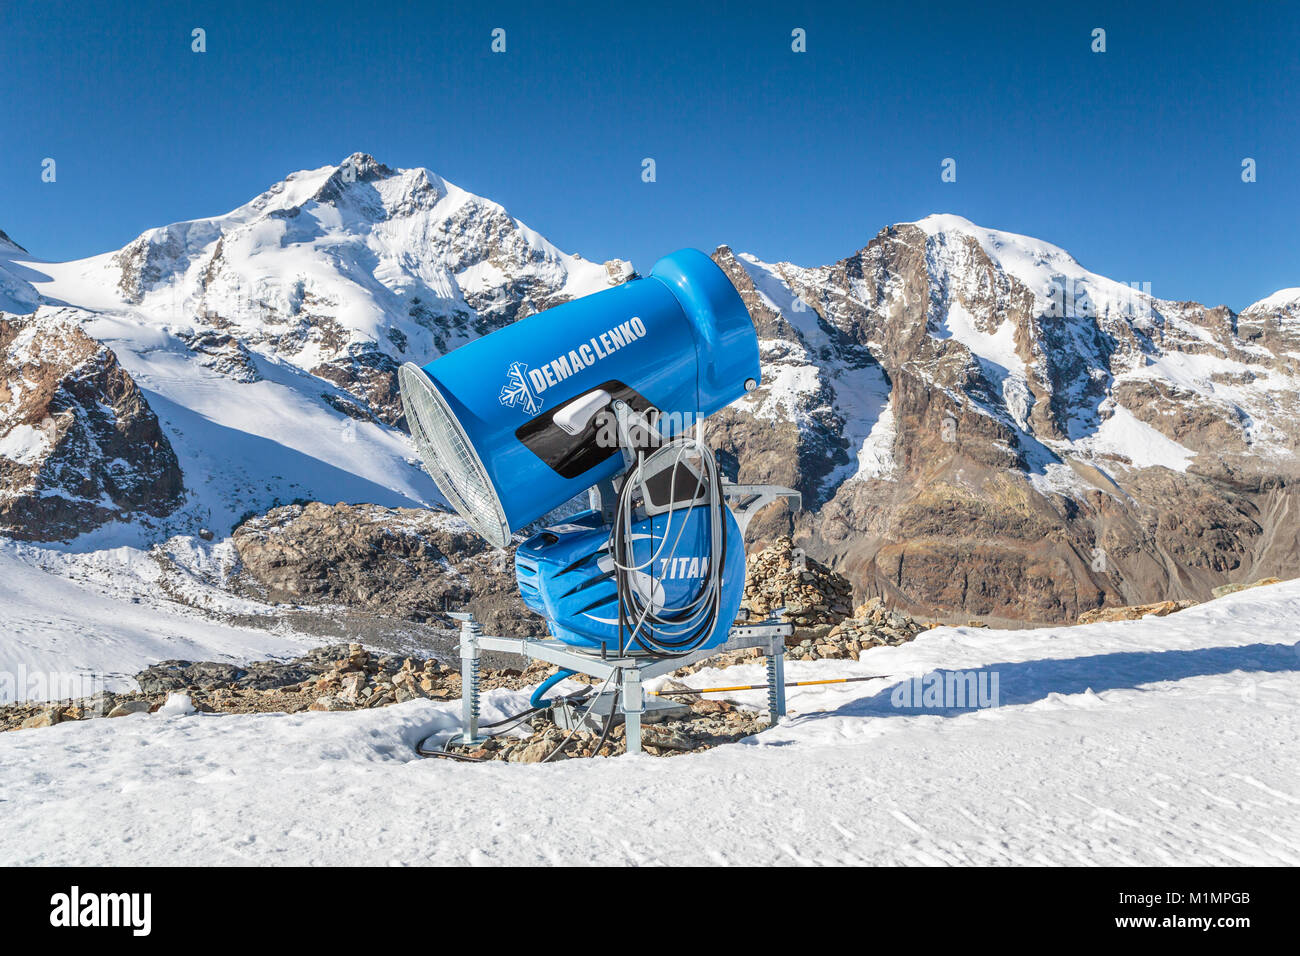 Une machine à neige dans la région de la Bernina et les sommets de montagne glacier Diavolezza, près de Saint-Moritz, en Suisse, l'Europe. Banque D'Images